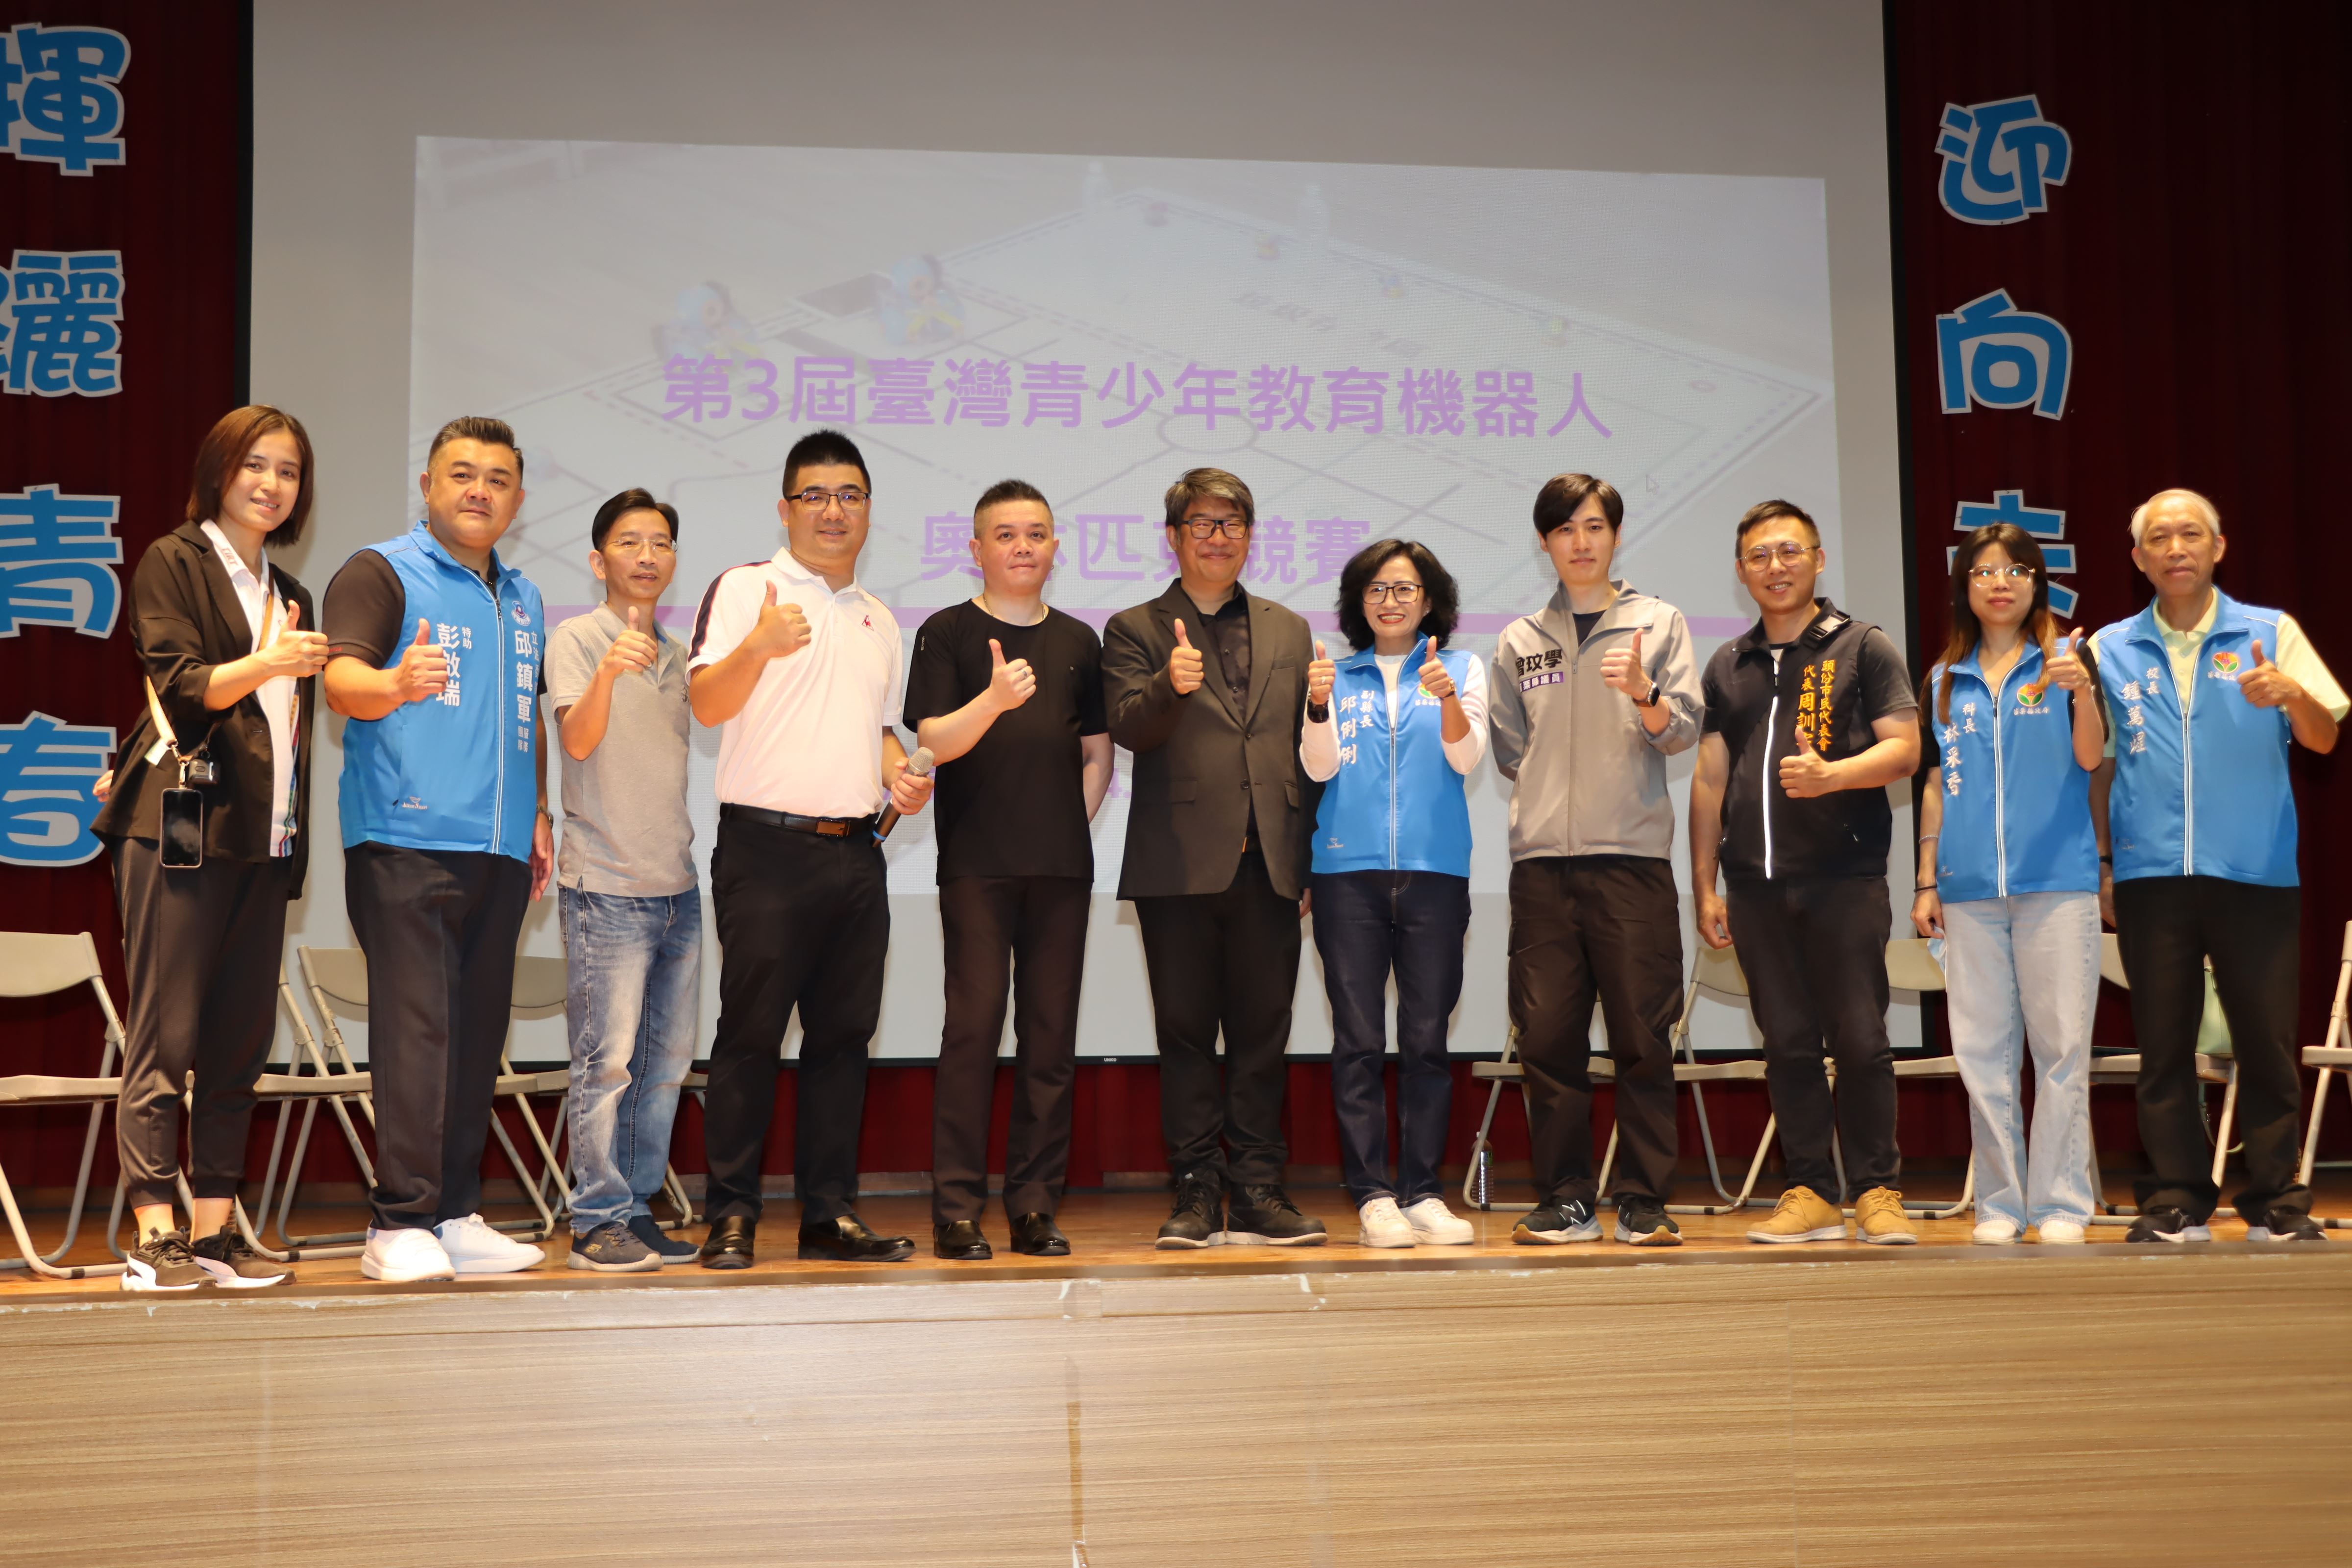 臺灣青少年教育機器人奧林匹克競賽移師苗縣舉行藉以推動STEAM教育